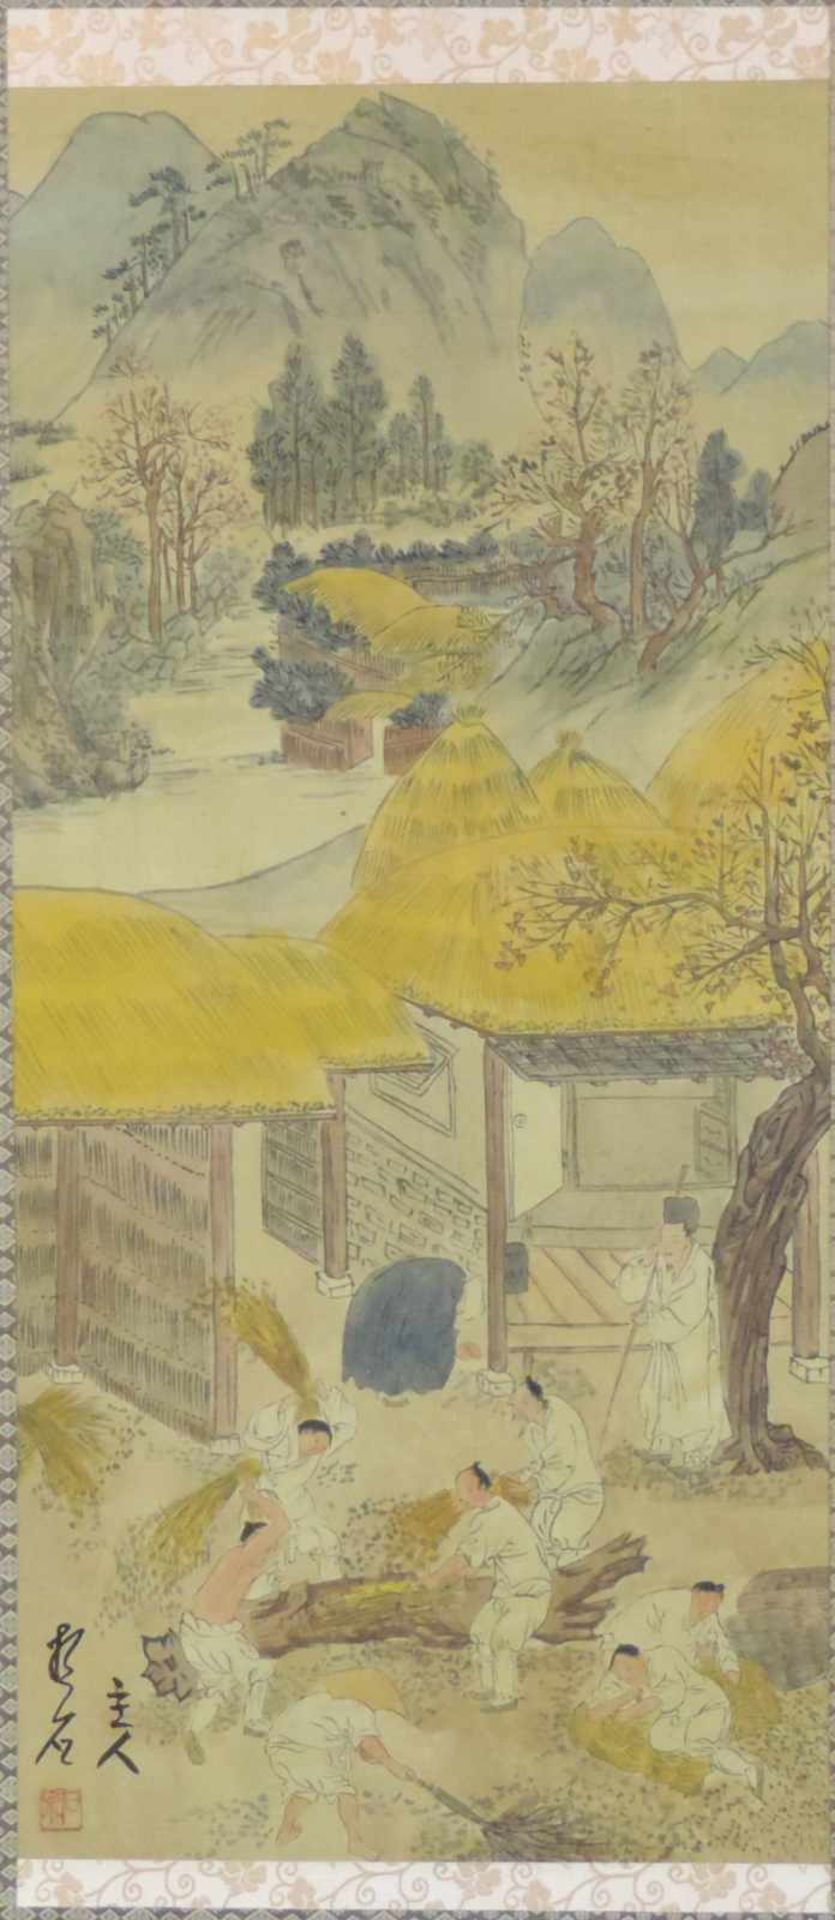 Malerei auf Papier. Landleben. Wohl China alt. 97 cm x 50 cm. Schriftzeichen und Stempel. Painting